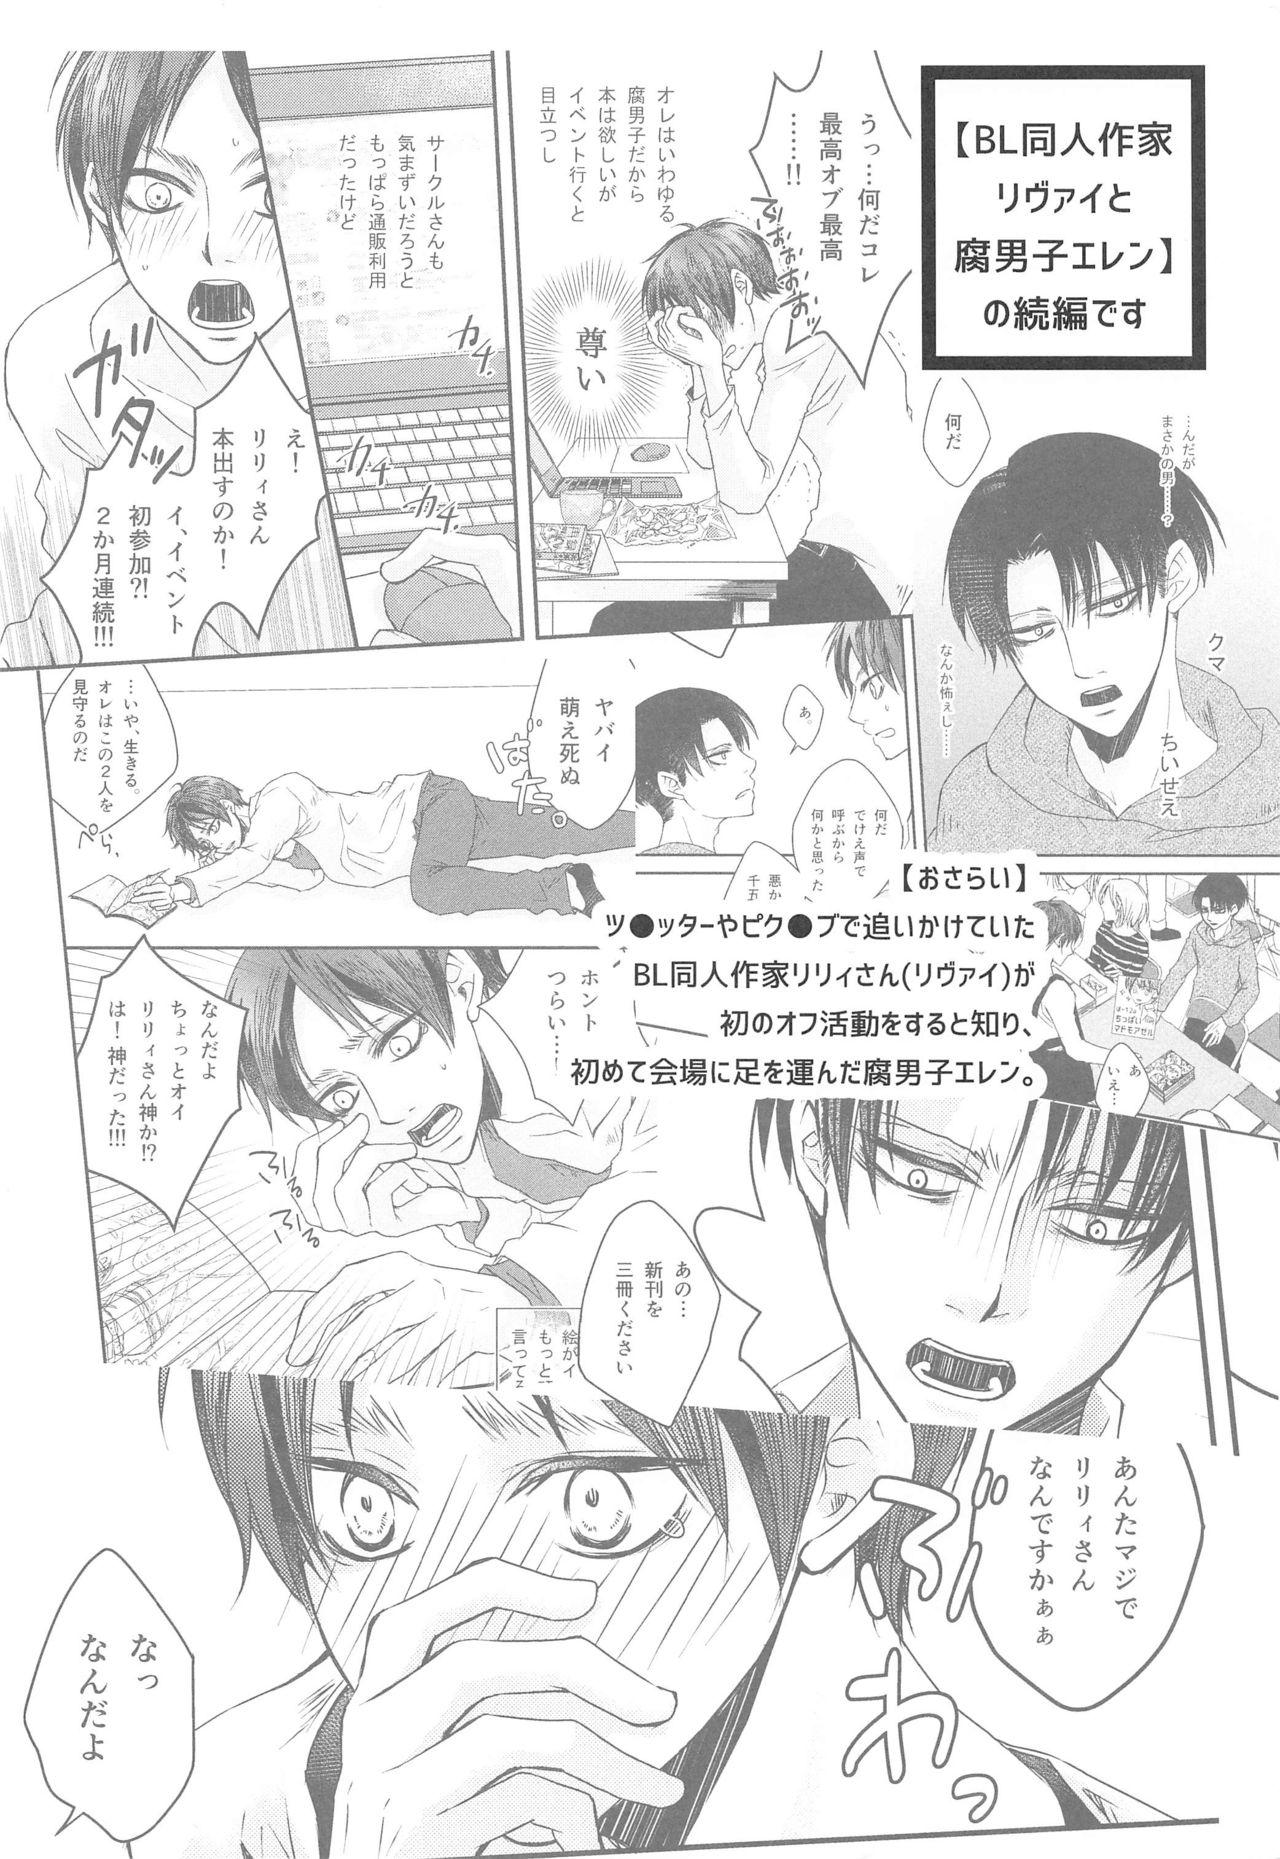 Comendo BL Doujin Sakka Levi no Kakumei - Shingeki no kyojin | attack on titan Condom - Page 3